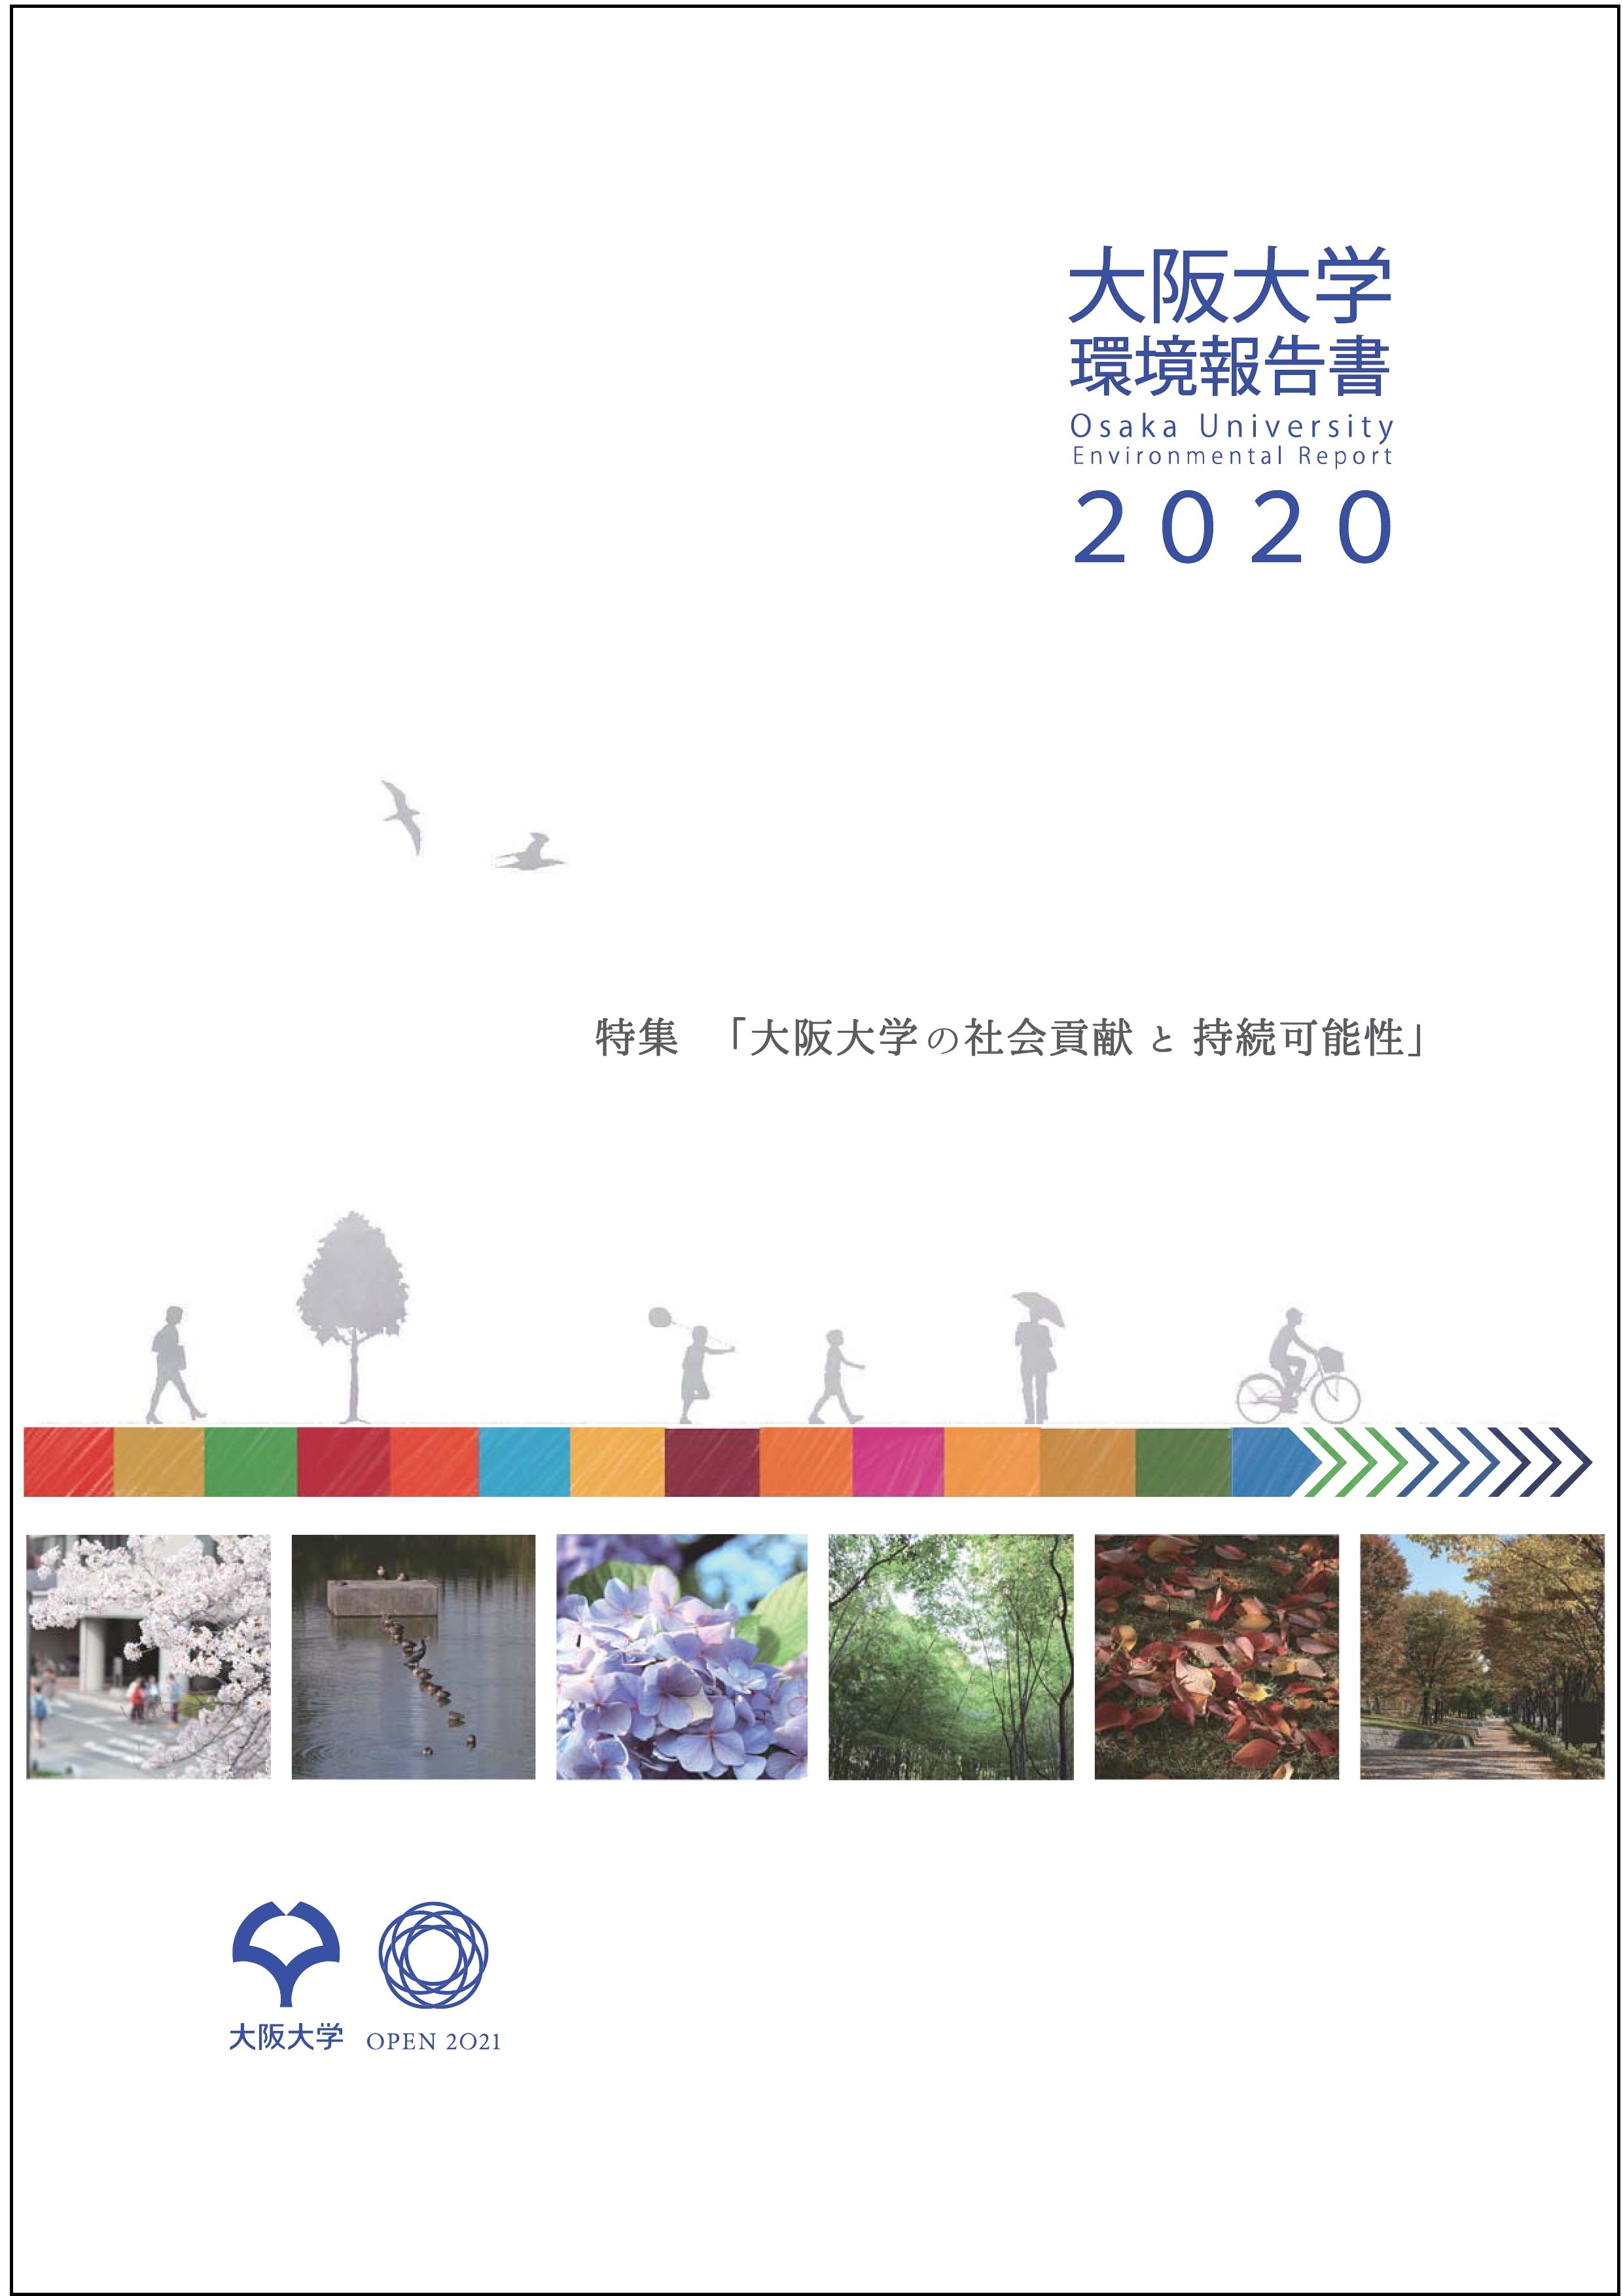 「大阪大学環境報告書2020」を発行しました